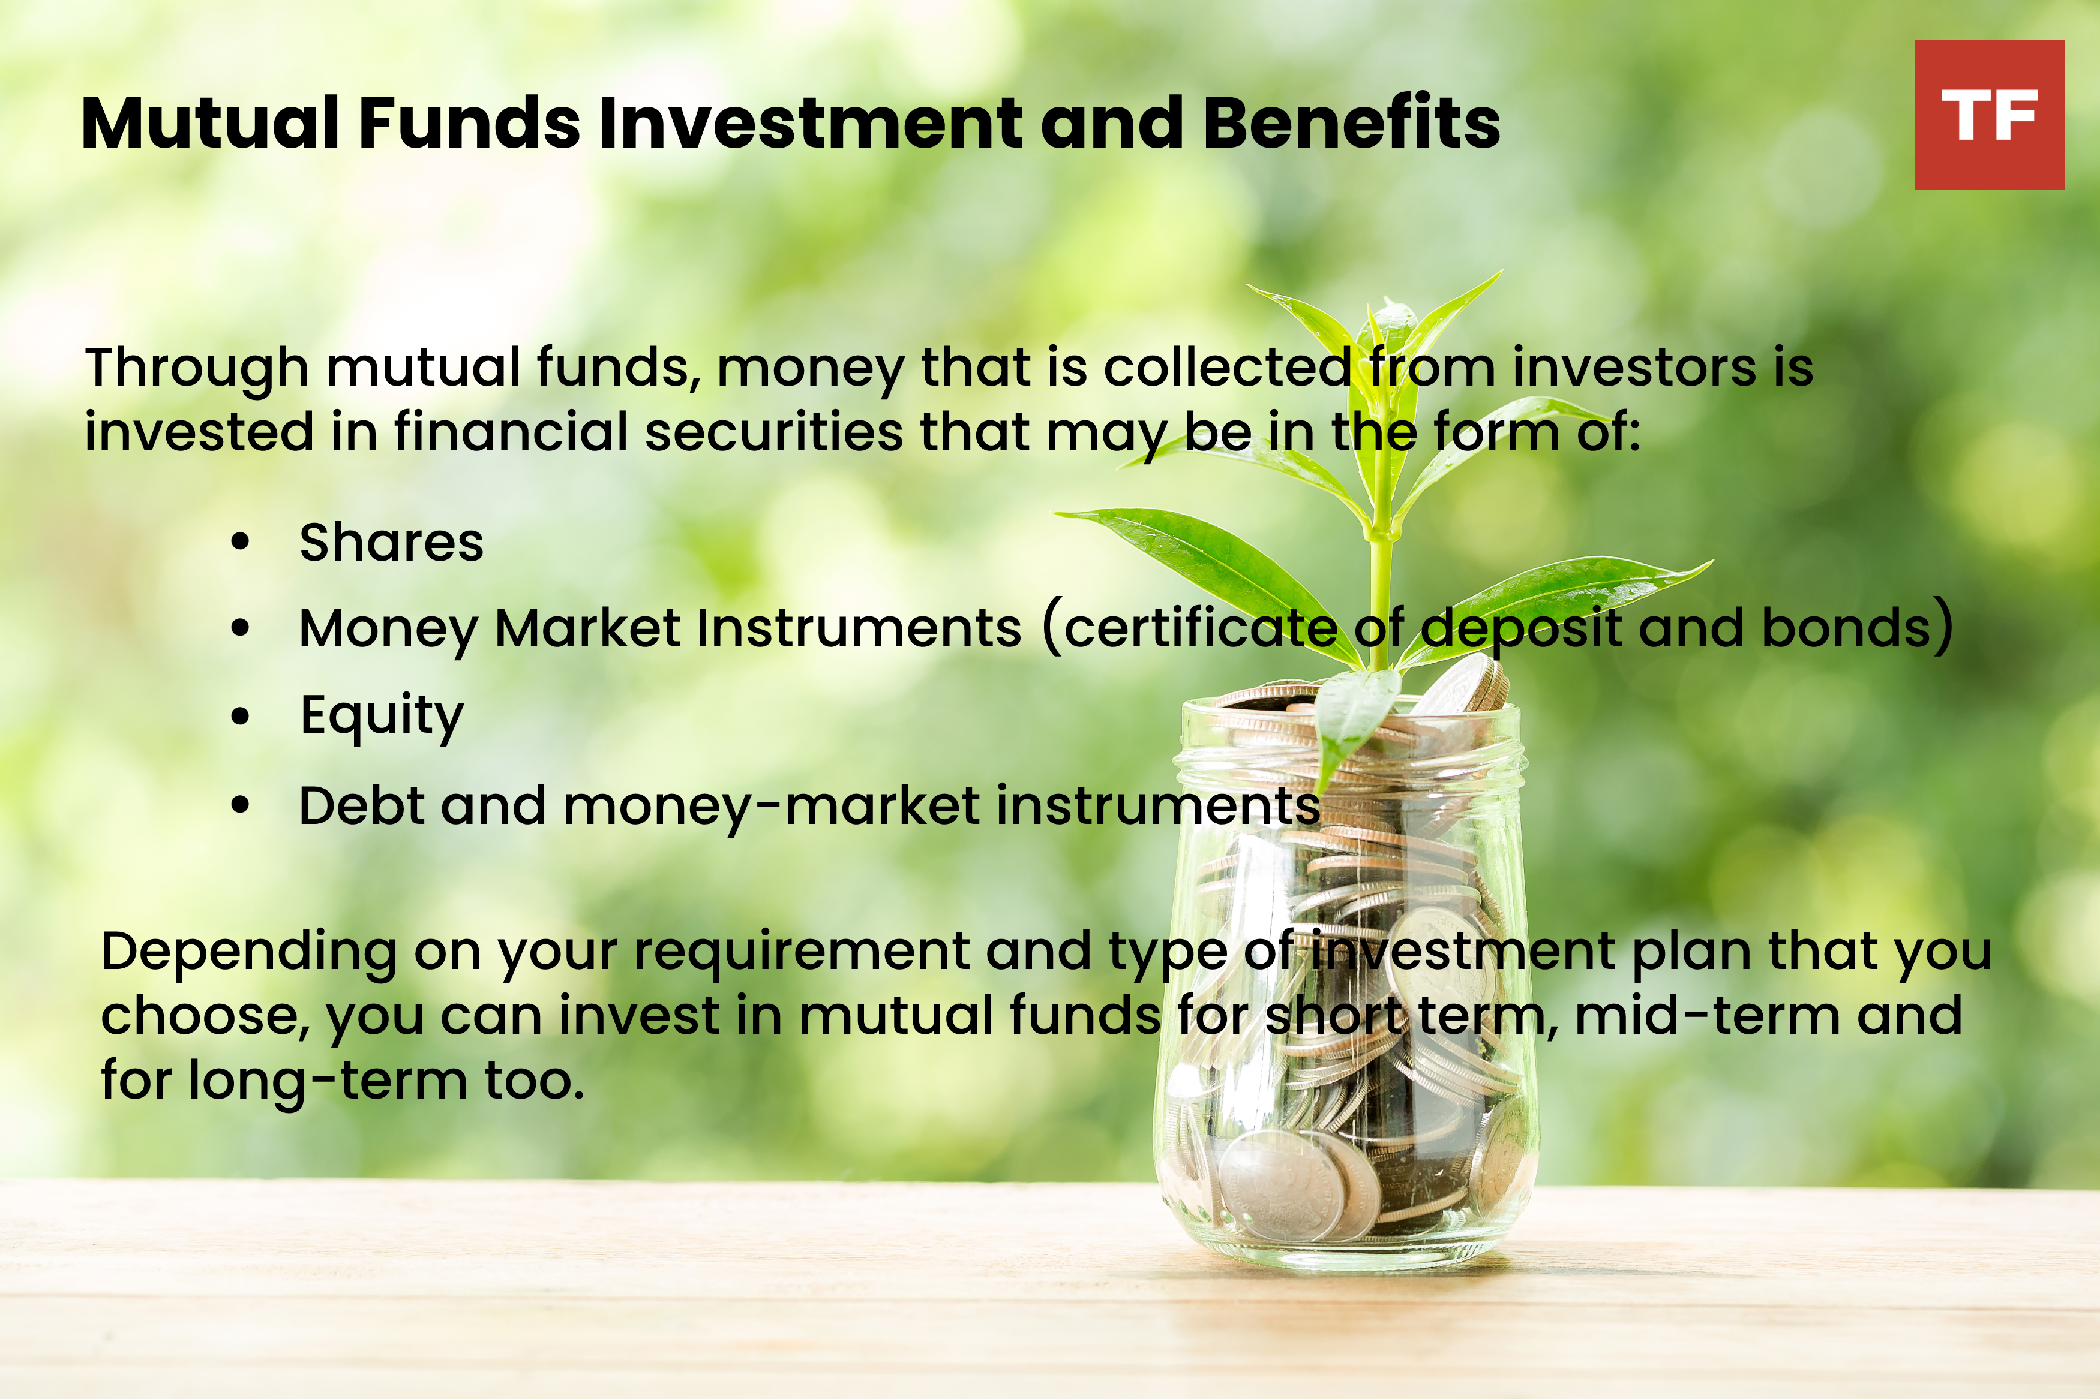 inversión y beneficios de fondos mutuos